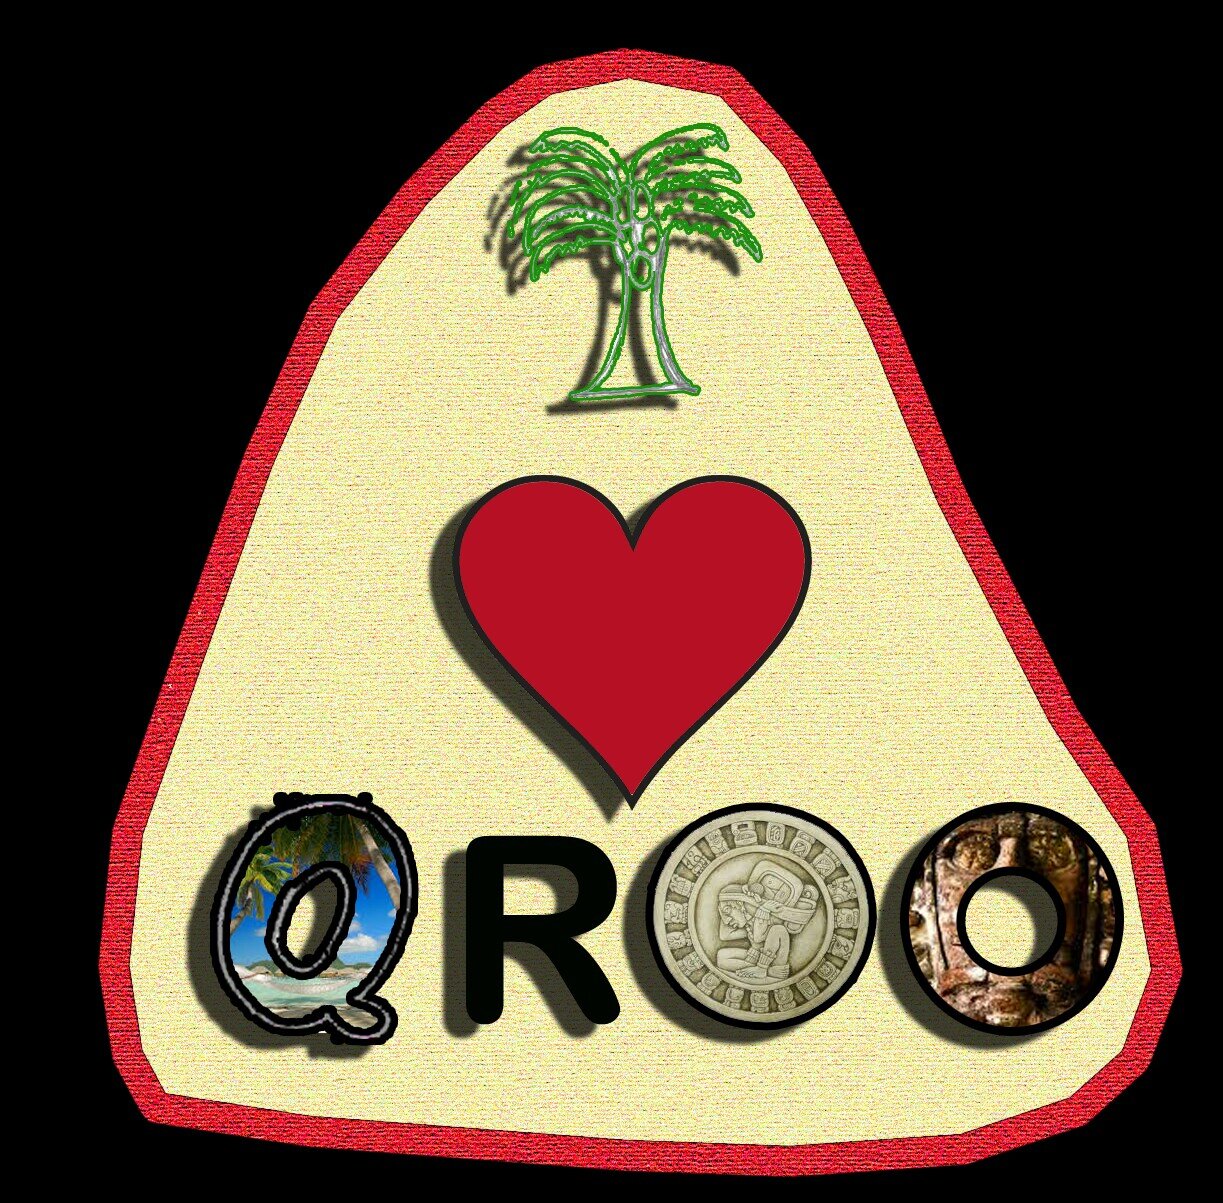 Página oficial de Yo AMO Quintana Roo. Comprometidos en refrendar nuestro amor al estado, nuestra cultura y a nuestra gente.